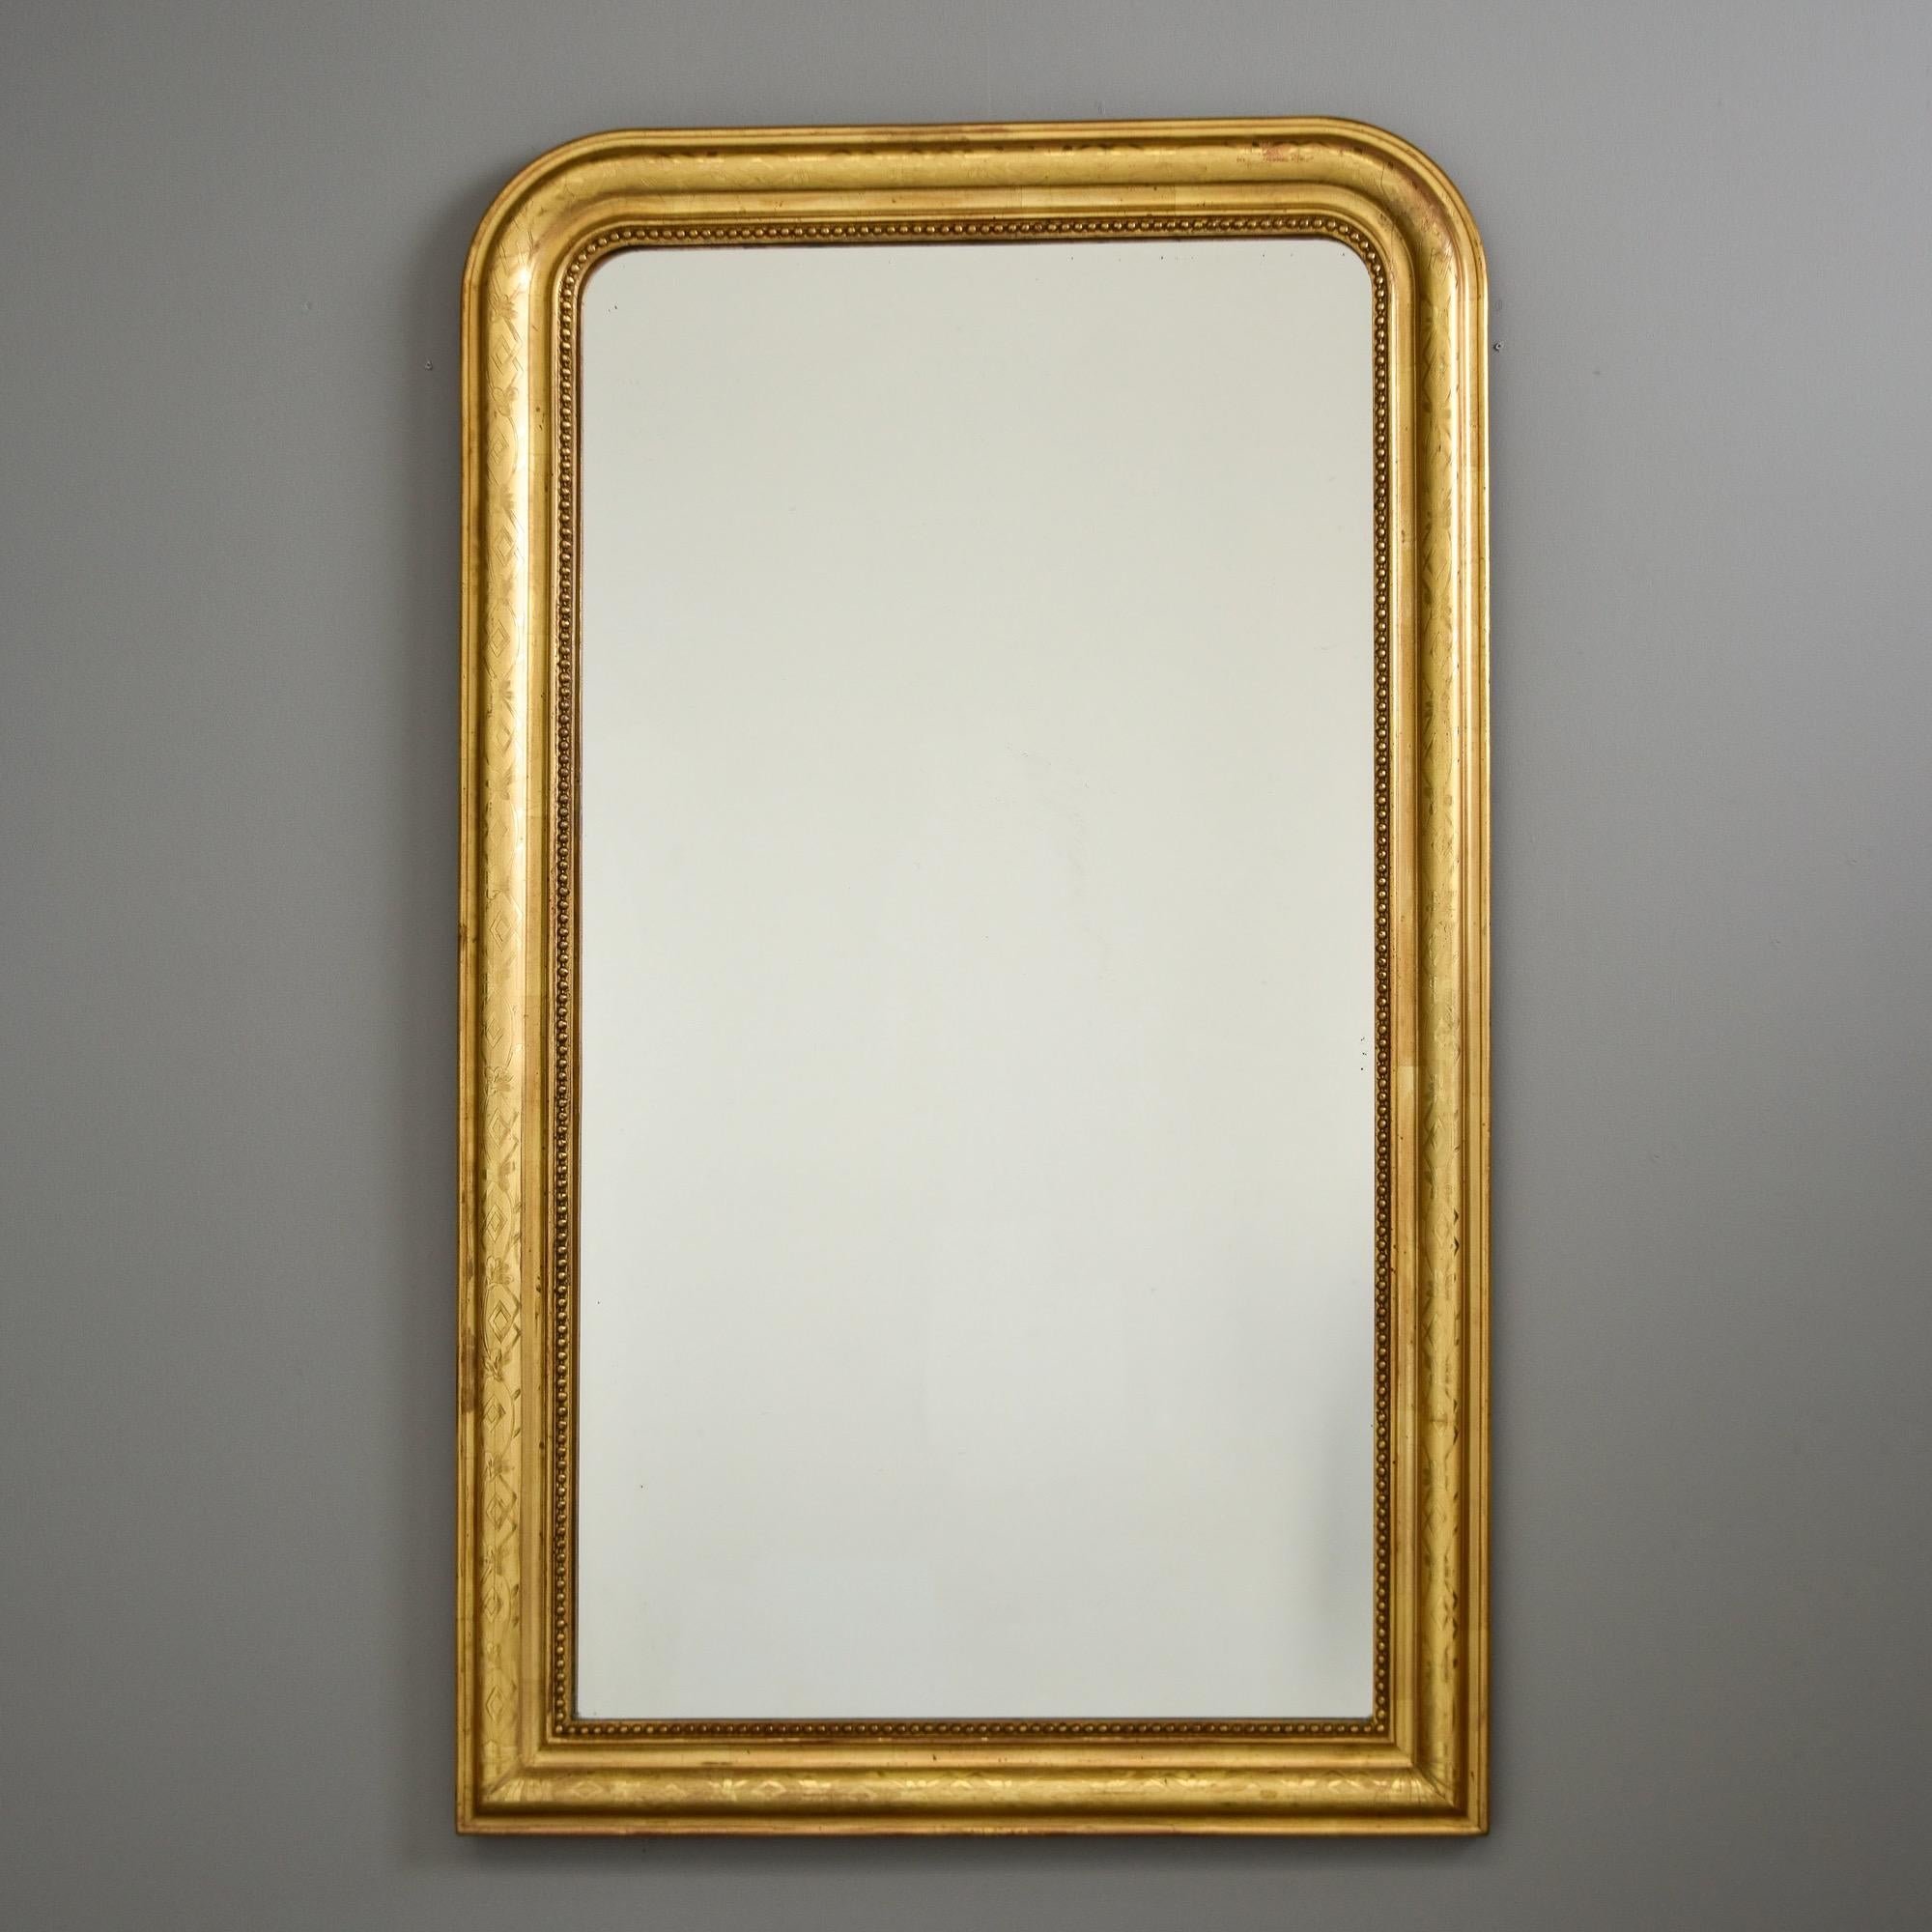 Trouvé en France, ce miroir Louis Philippe encadré de bois doré date des années 1870. Le miroir a été remplacé récemment - nous avons acquis cette pièce telle qu'elle est présentée auprès d'un marchand français. Subtil motif gravé sur tout le